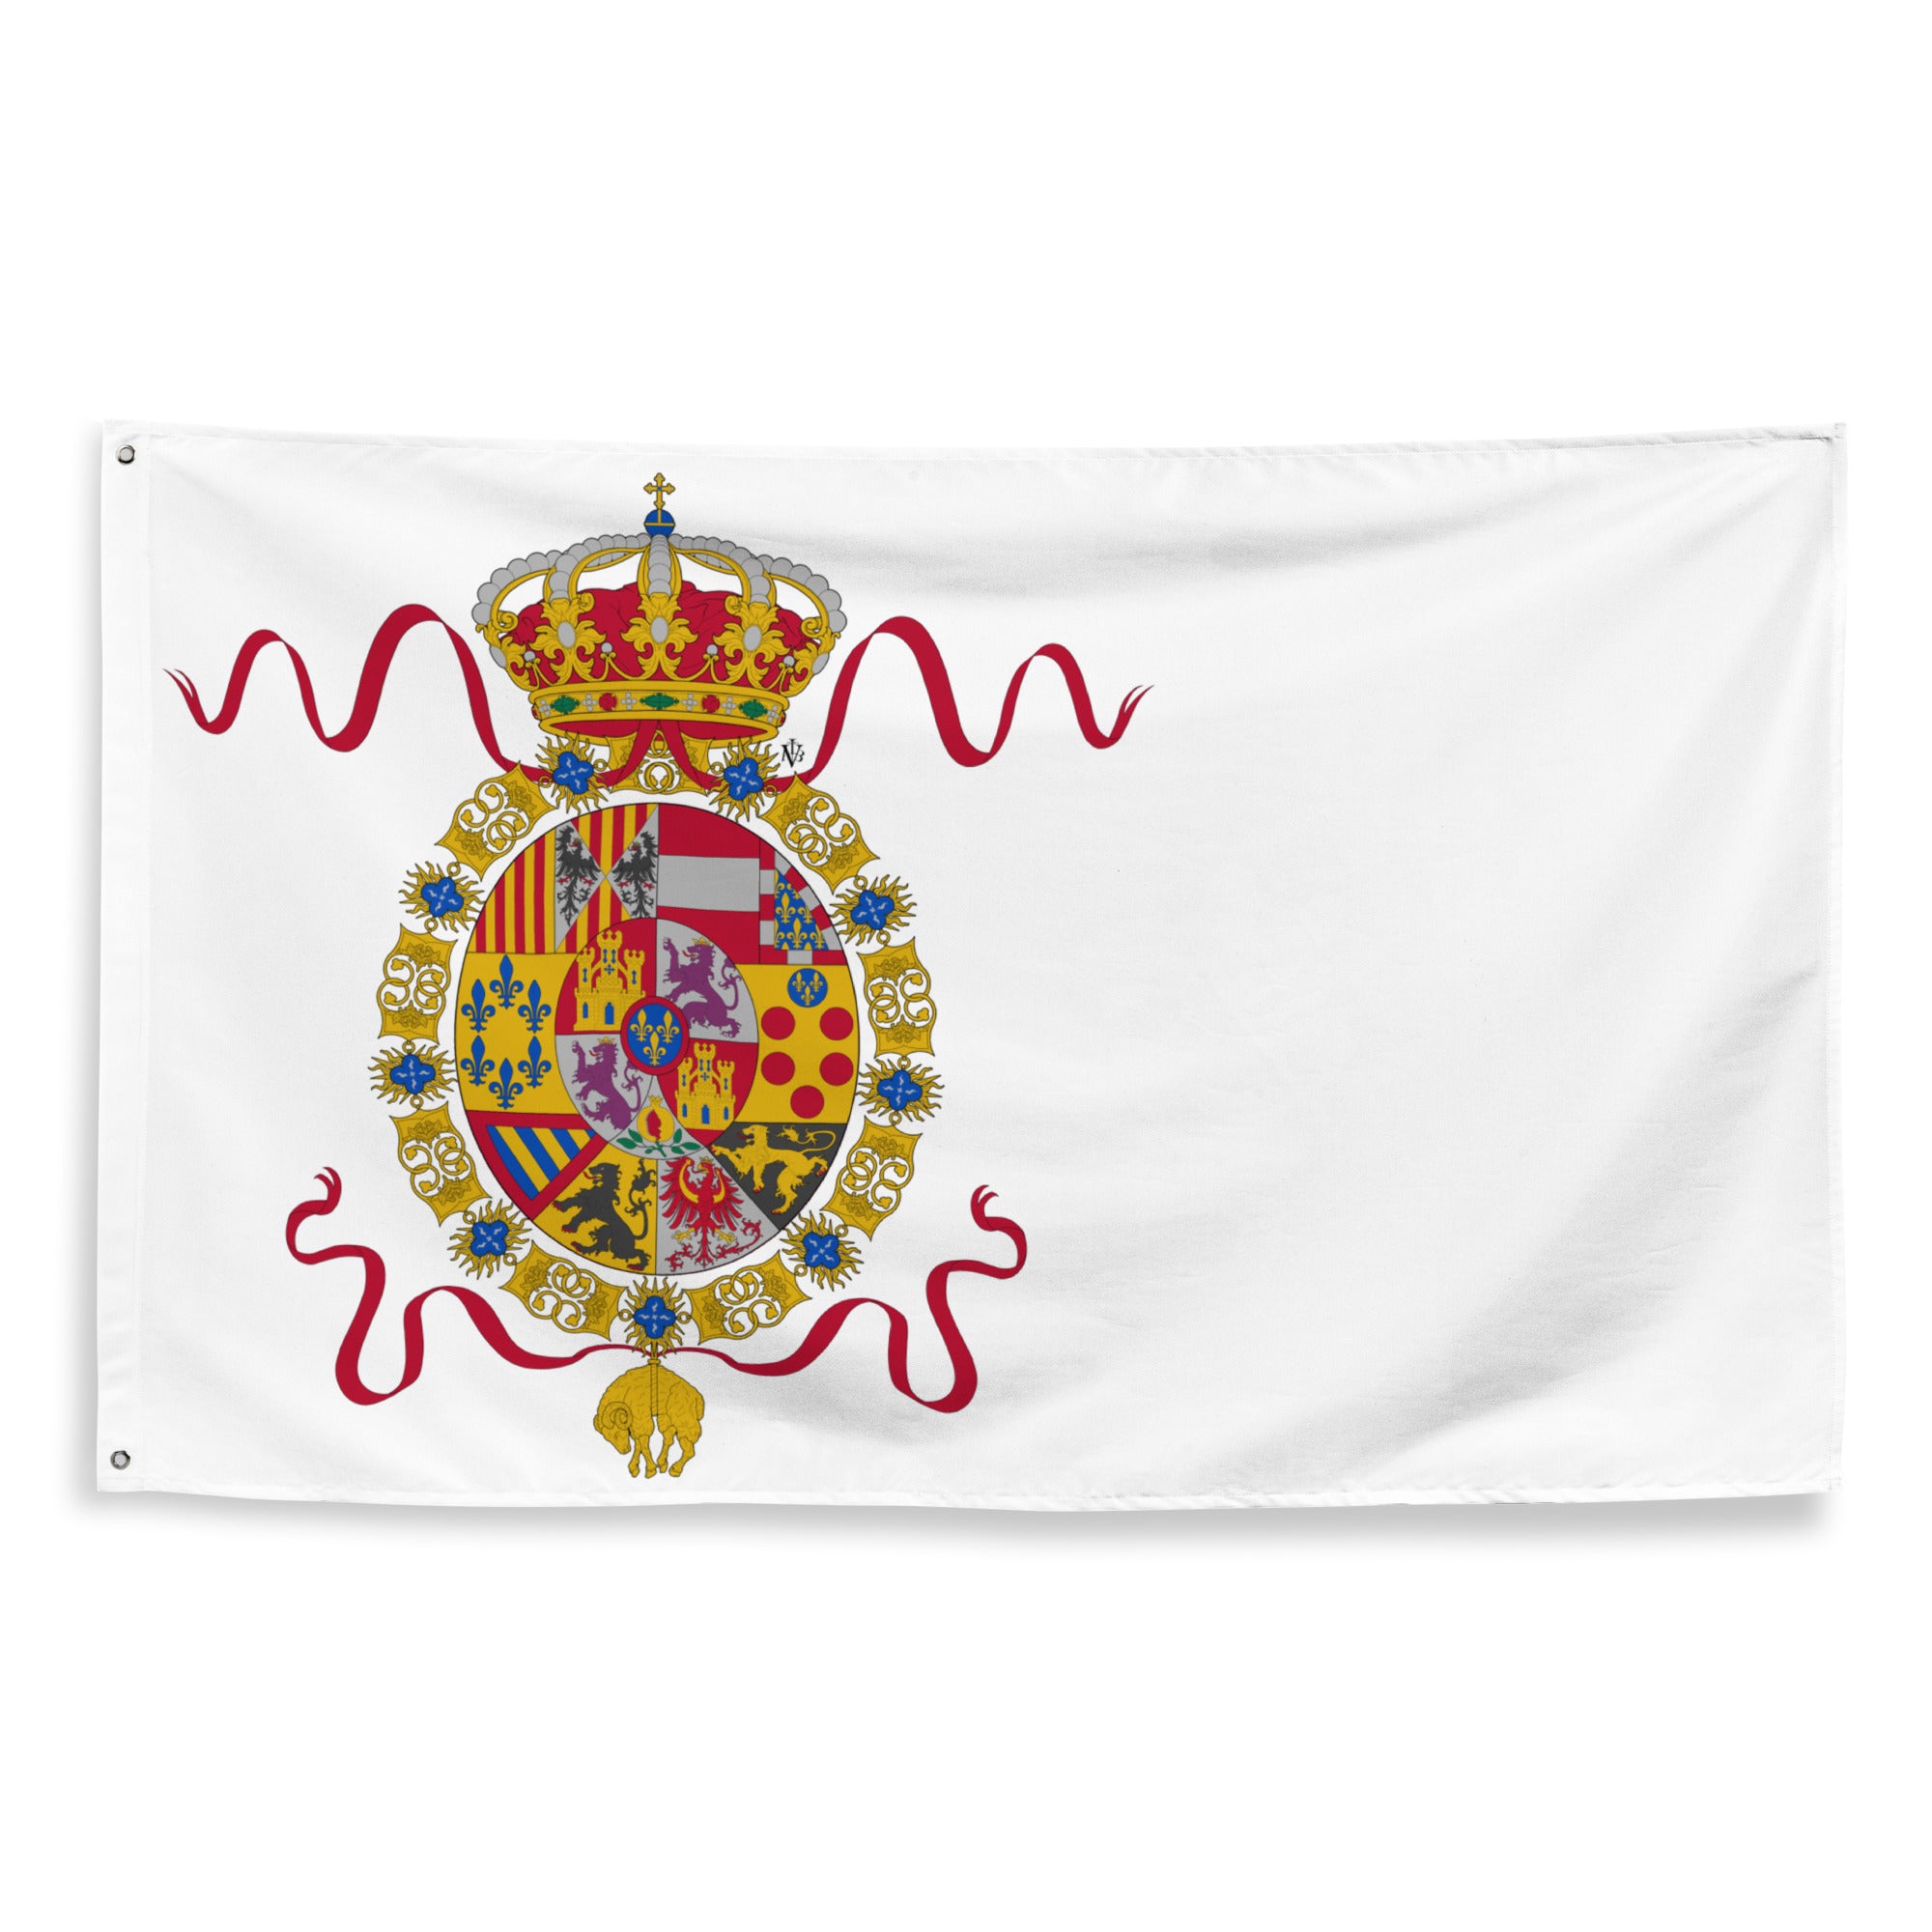 Bandera de los Borbones (d.1760)